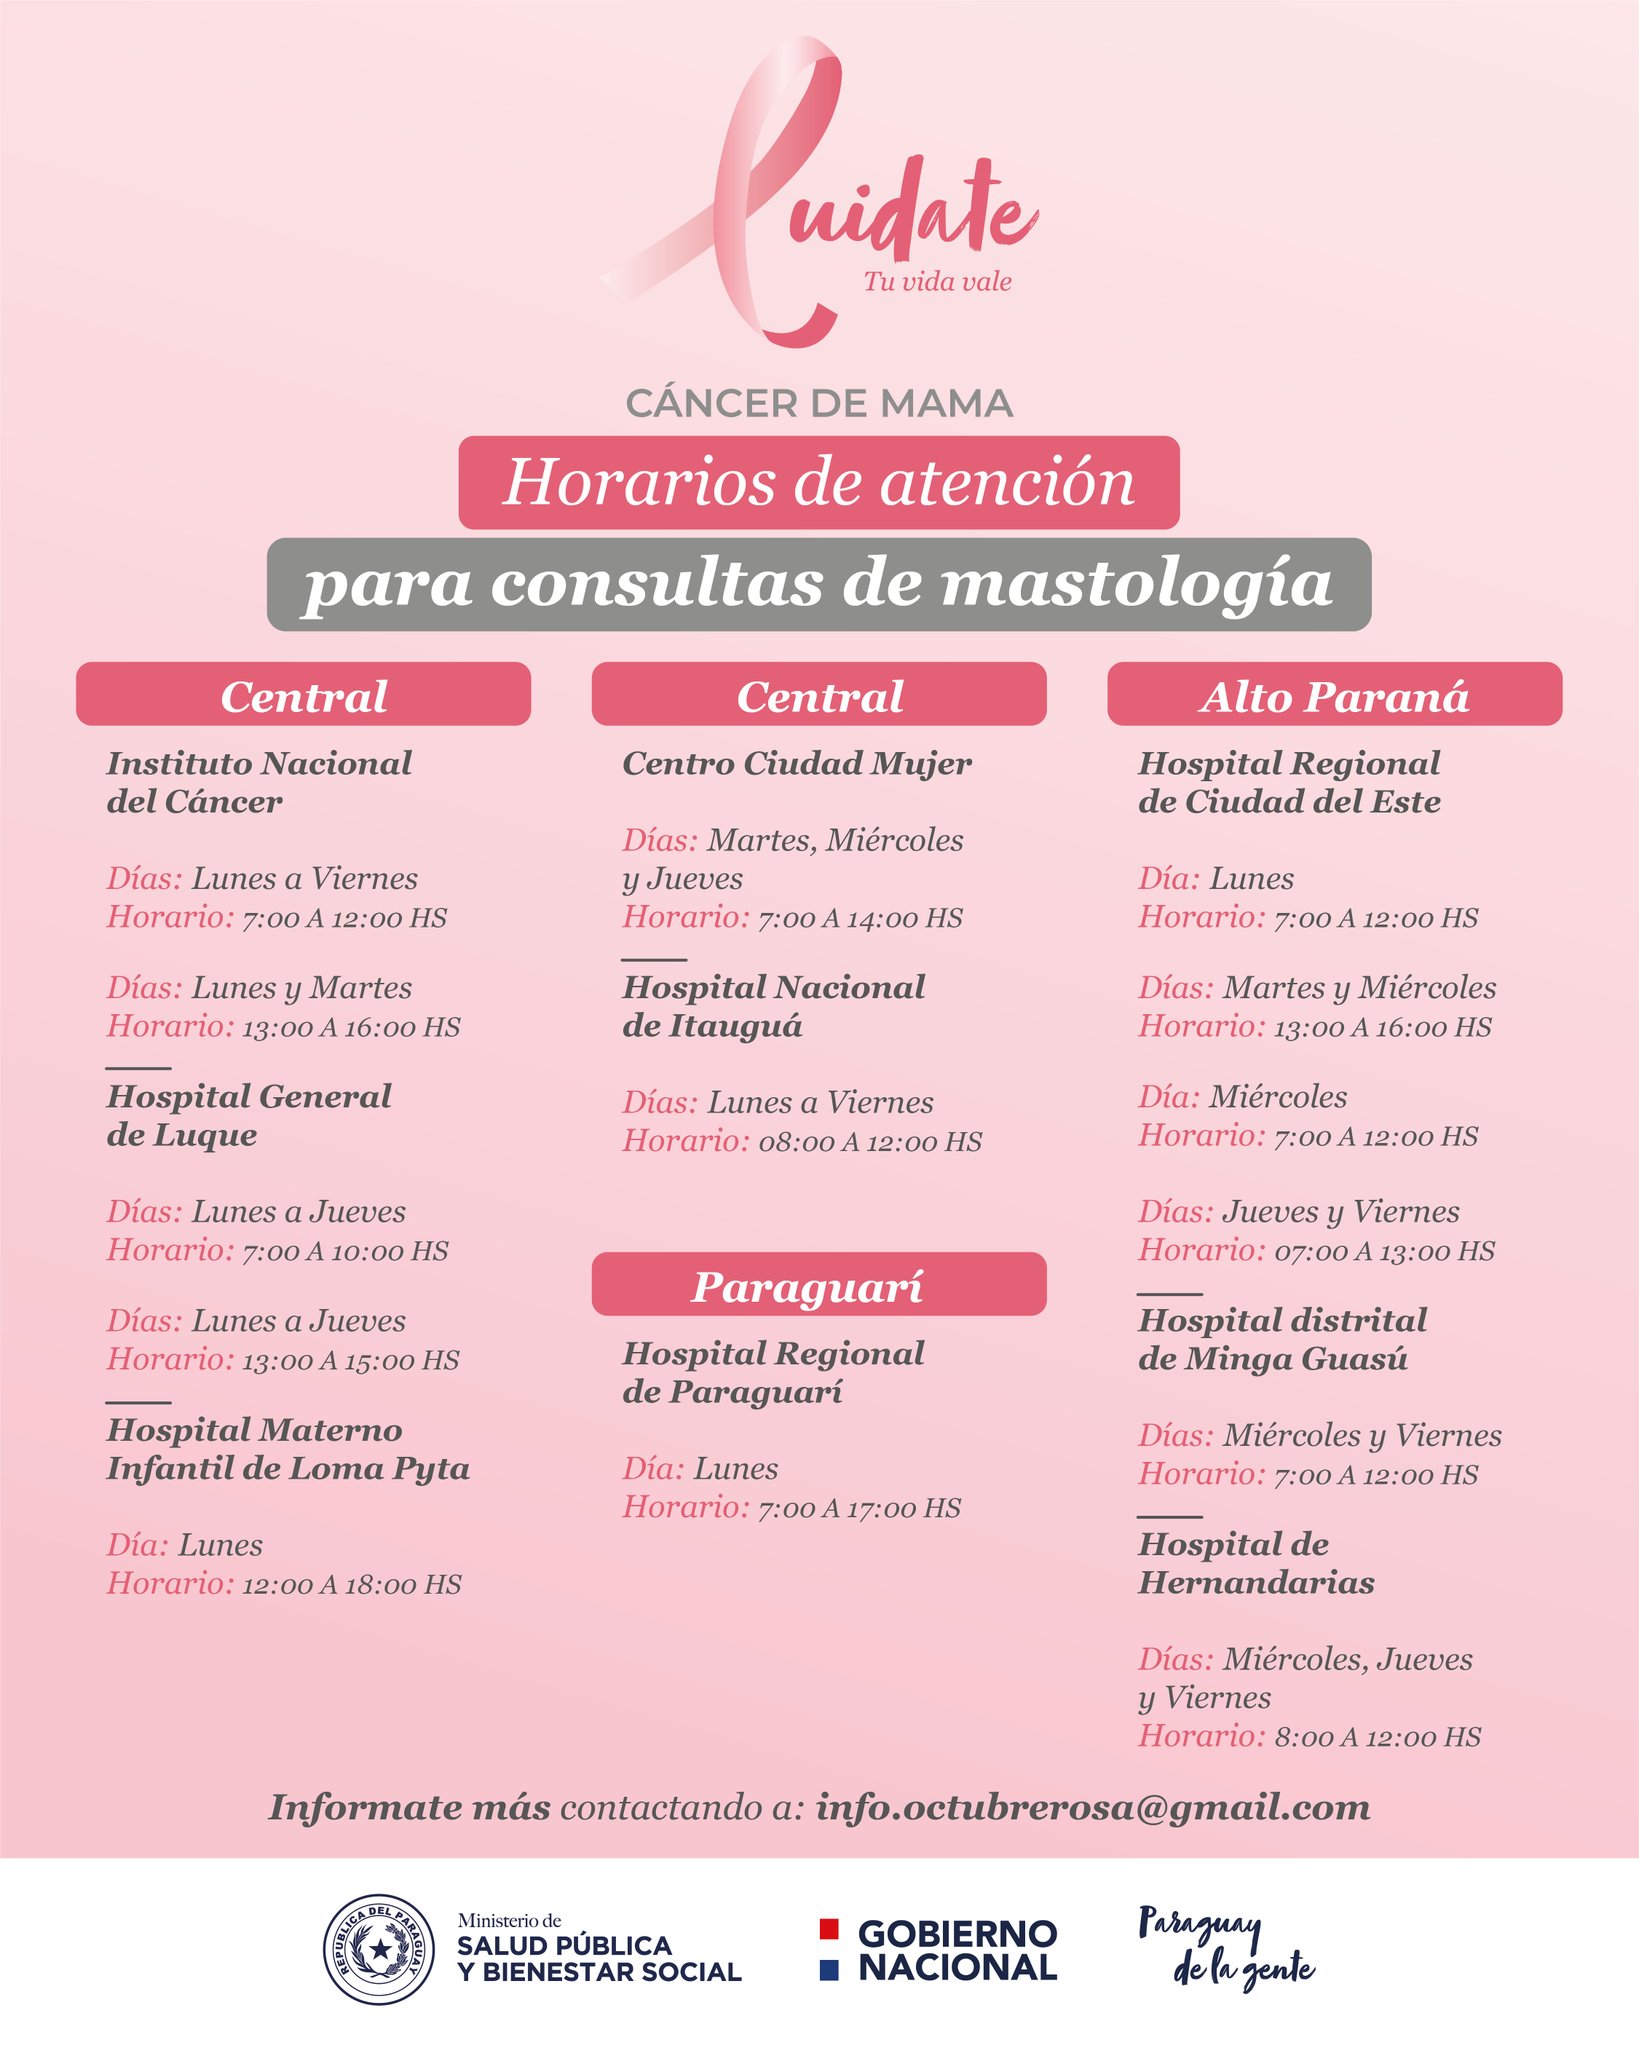 Centros habilitados para consultas de mastología. Fuente: Ministerio de Salud.